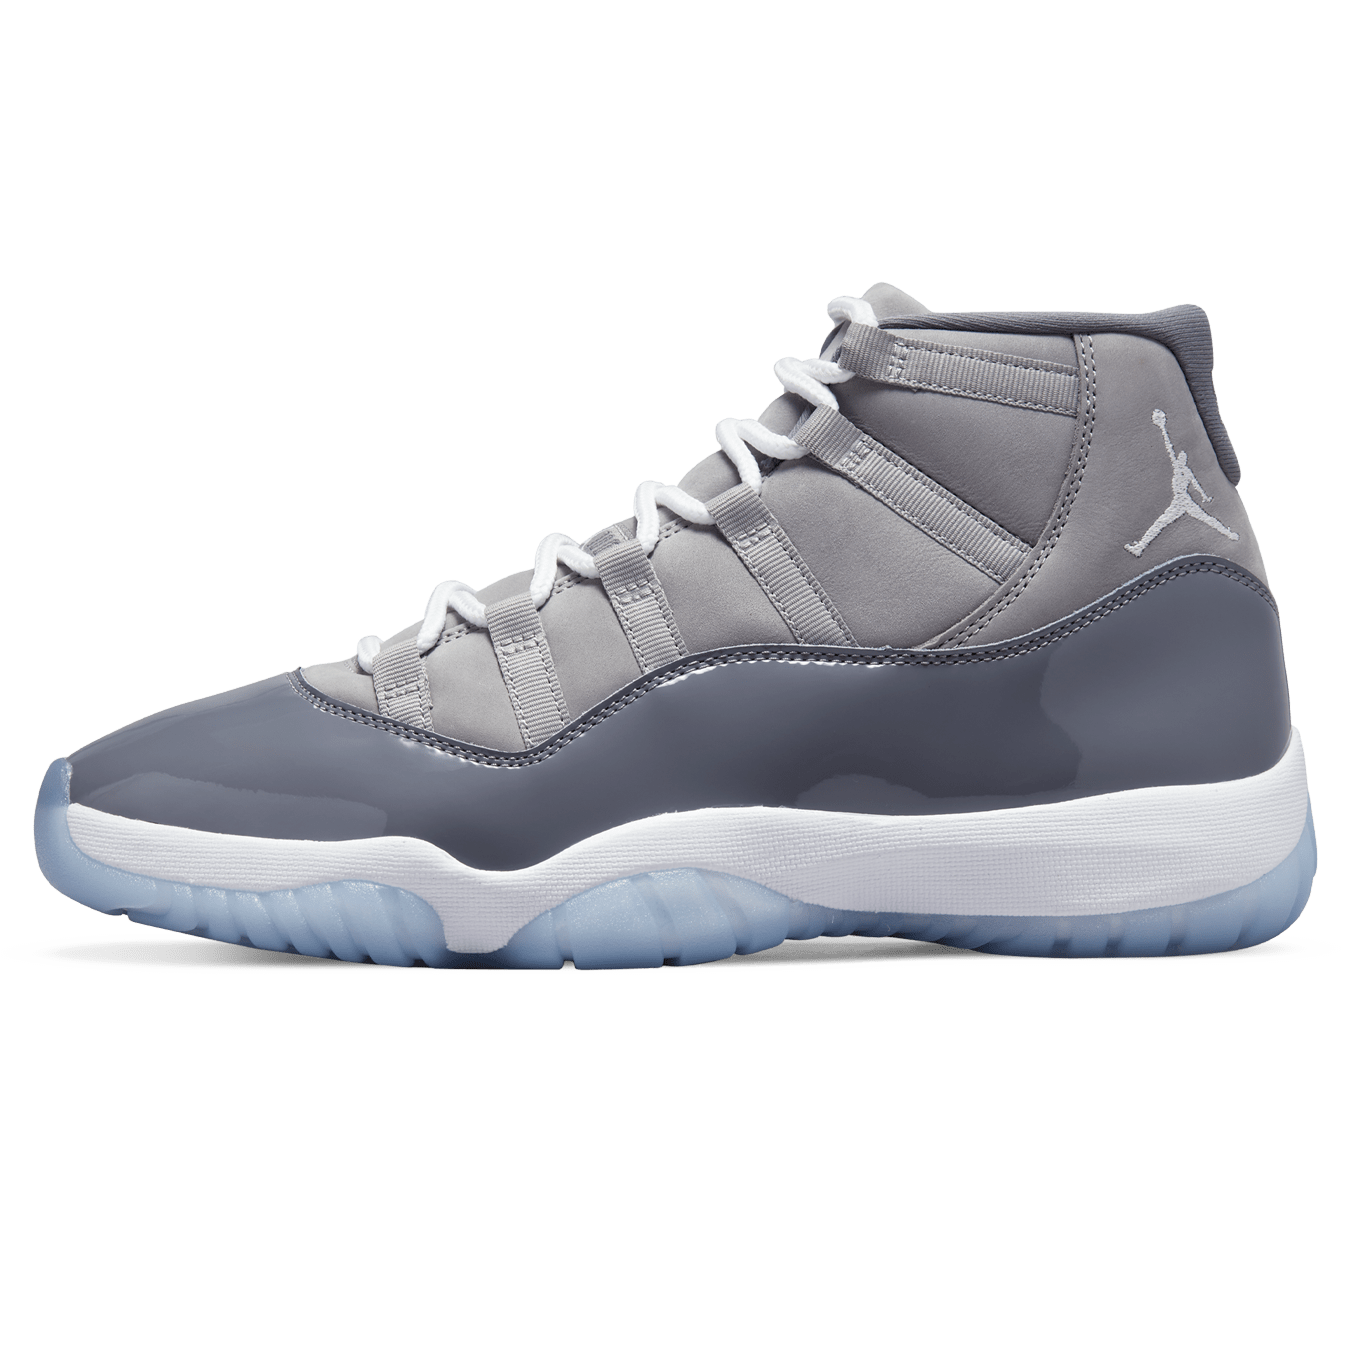 Air Jordan 11 Retro 'Cool Grey' 2021 — Kick Game